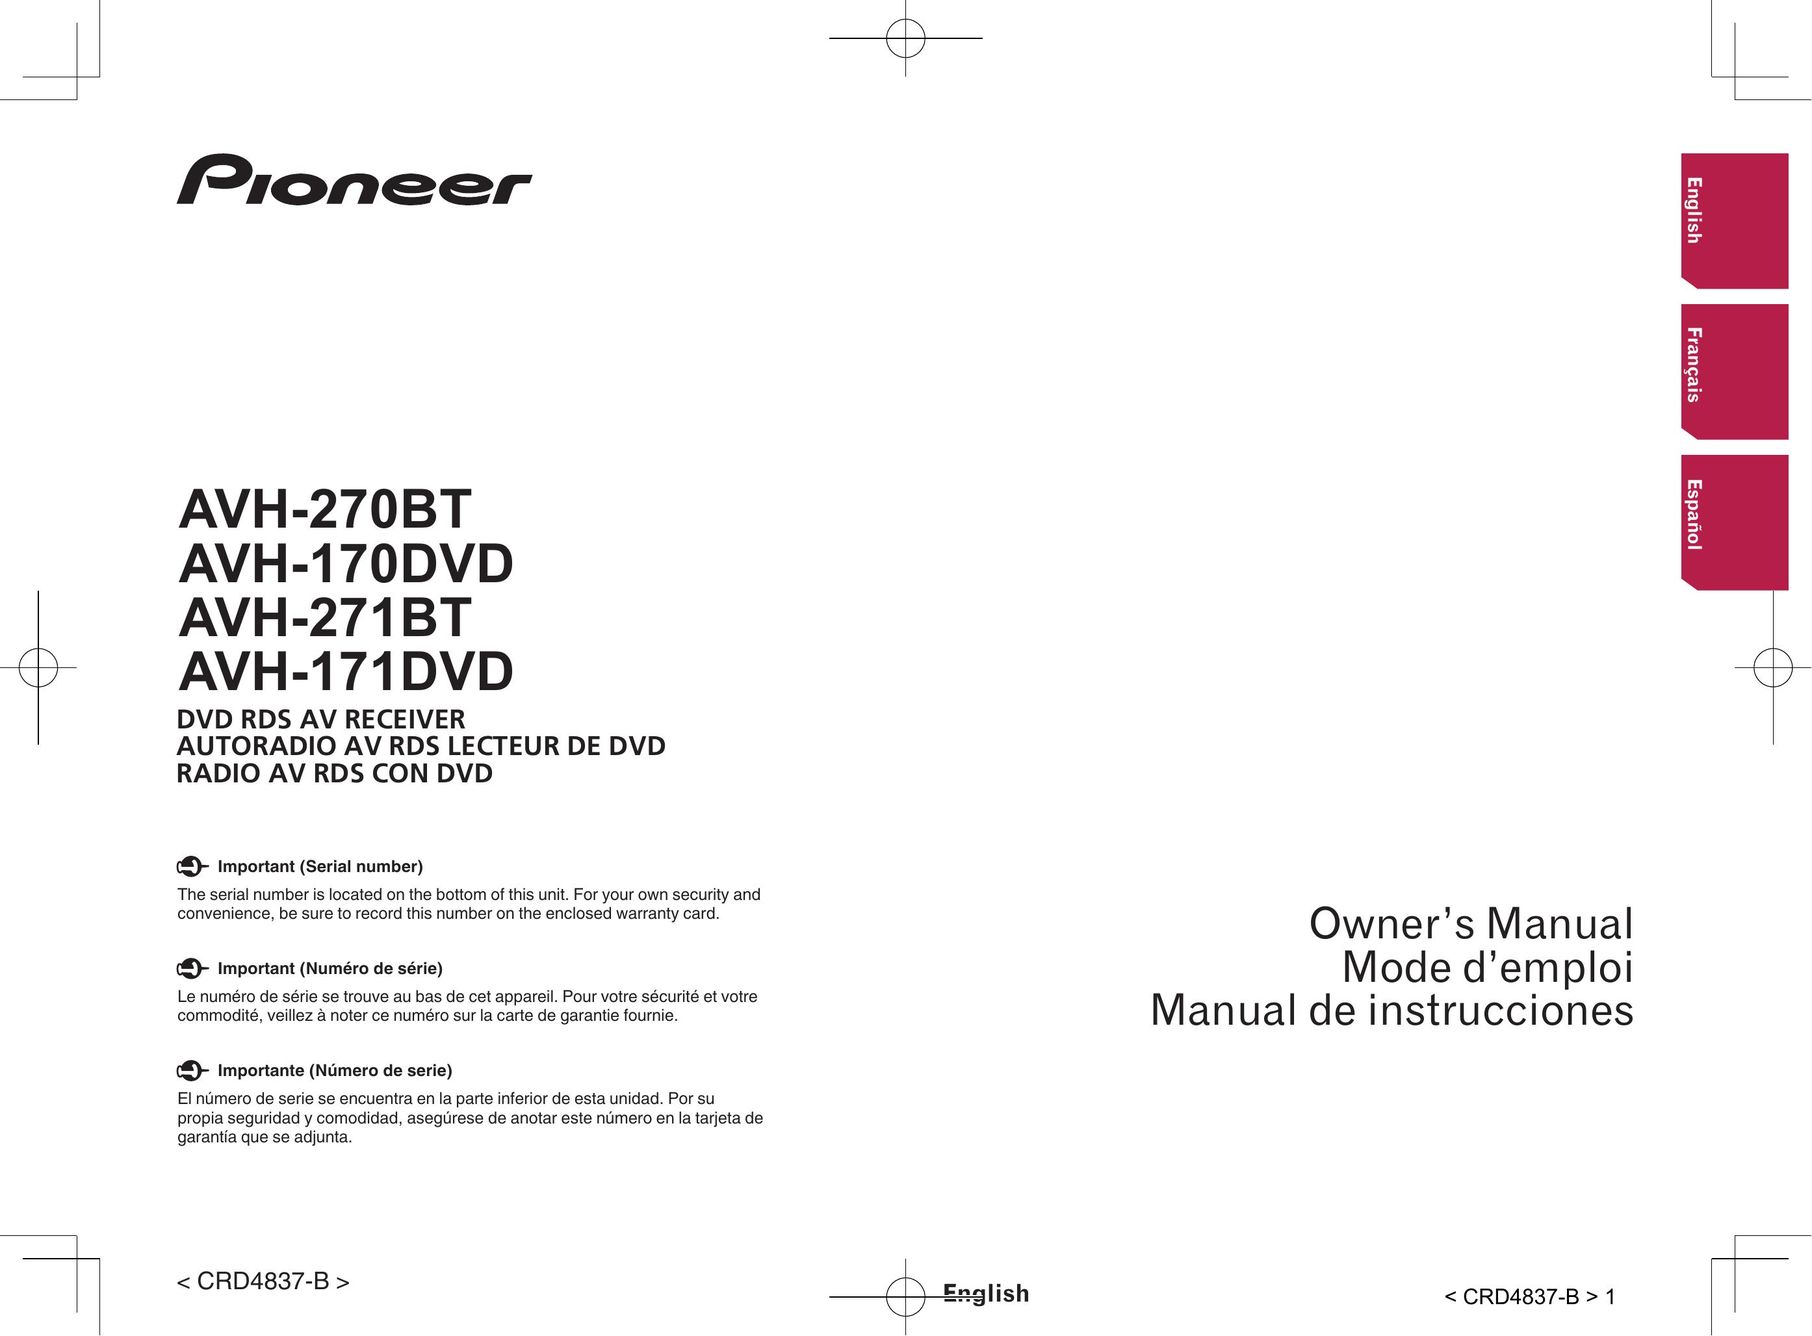 Pioneer AVH-170DVD TV Video Accessories User Manual